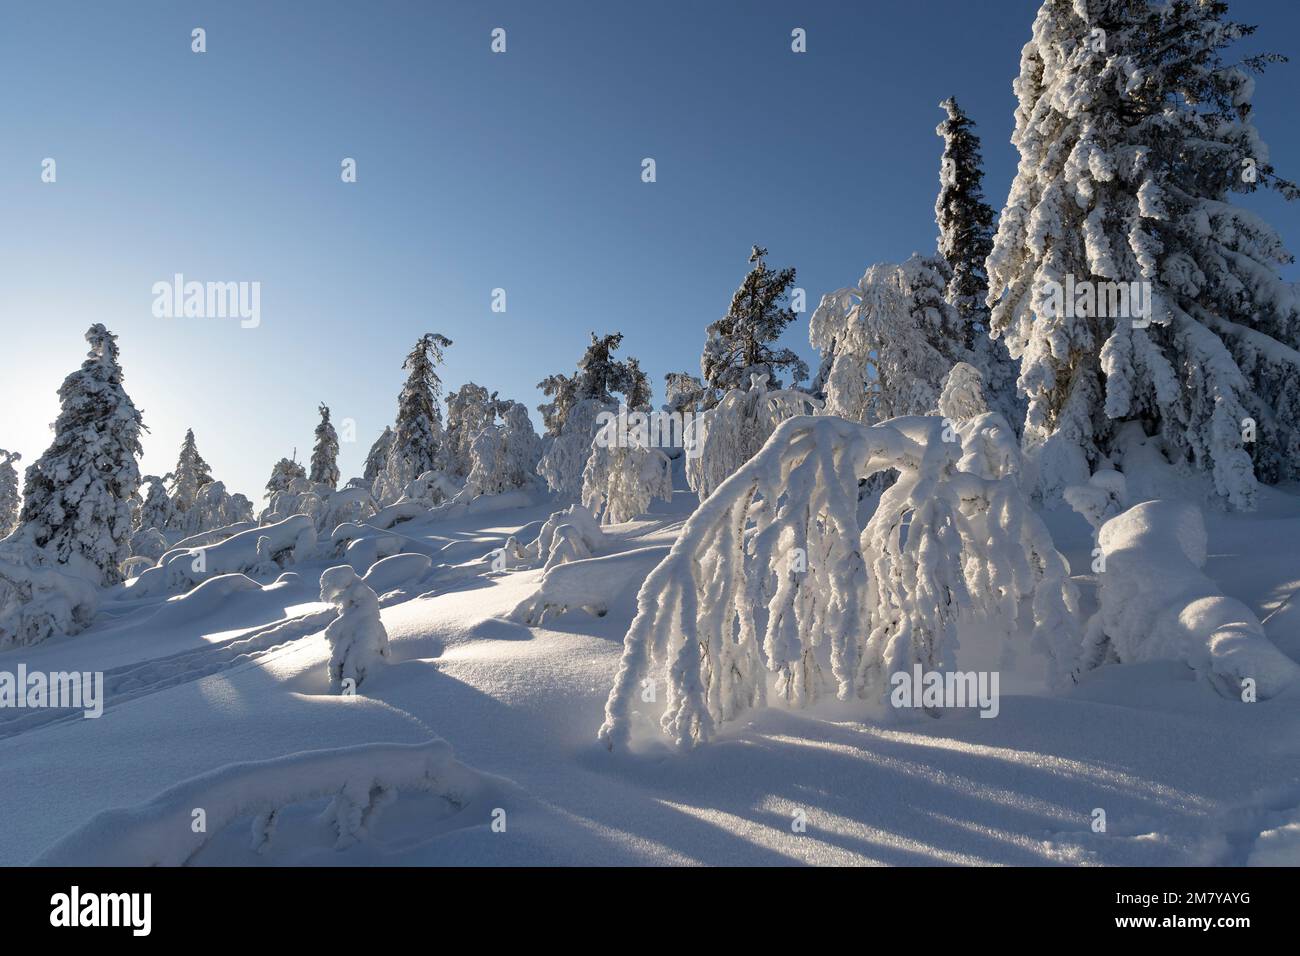 Vue sur la Laponie finlandaise en hiver avec de la neige fraîche sur les pins. Banque D'Images